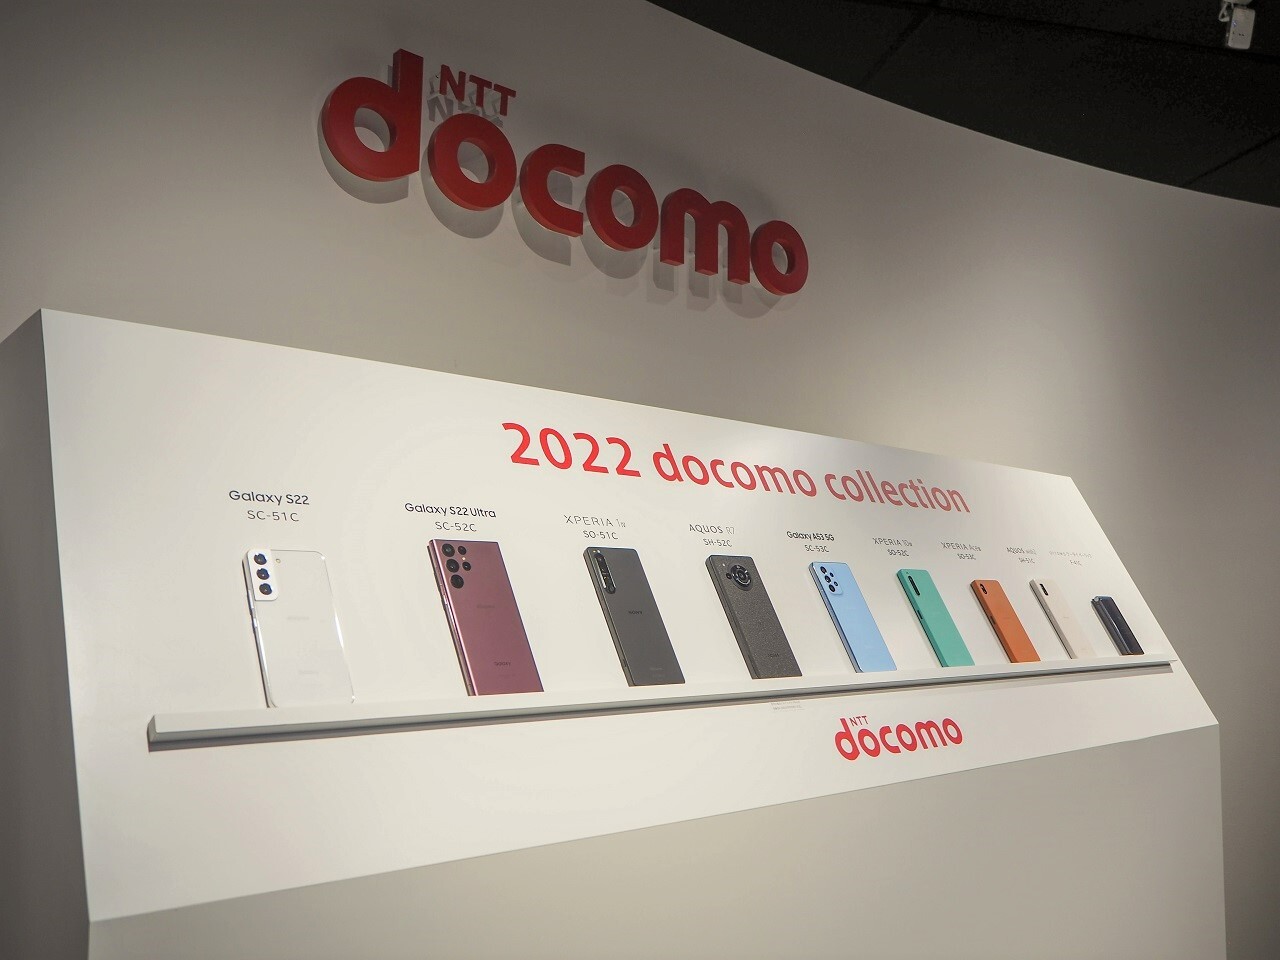 ドコモは2022年夏の新商品ラインアップ9機種を発表。全て直前までに発表済みのモデルとなる